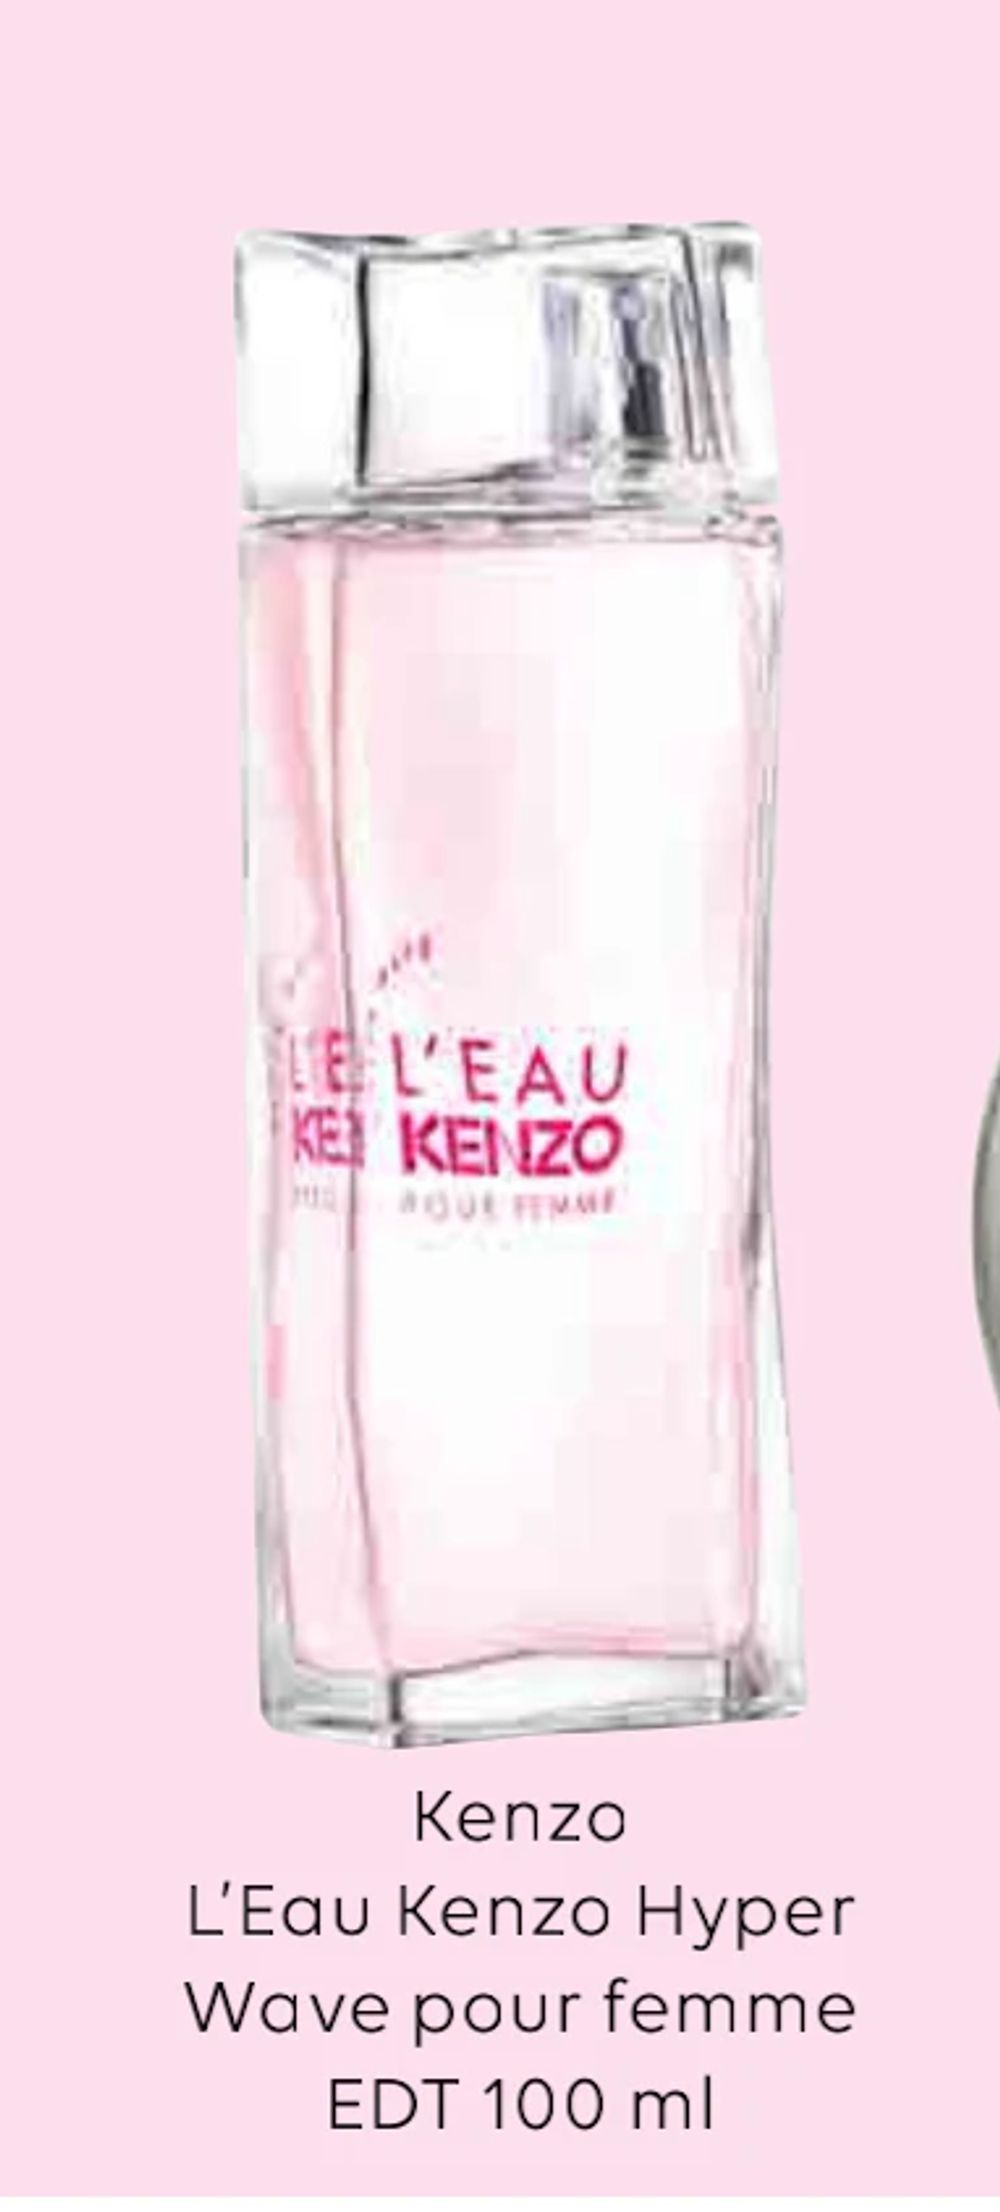 Tilbud på Kenzo L’Eau Kenzo Hyper Wave pour femme EDT 100 ml fra Scandlines Travel Shop til 299 kr.